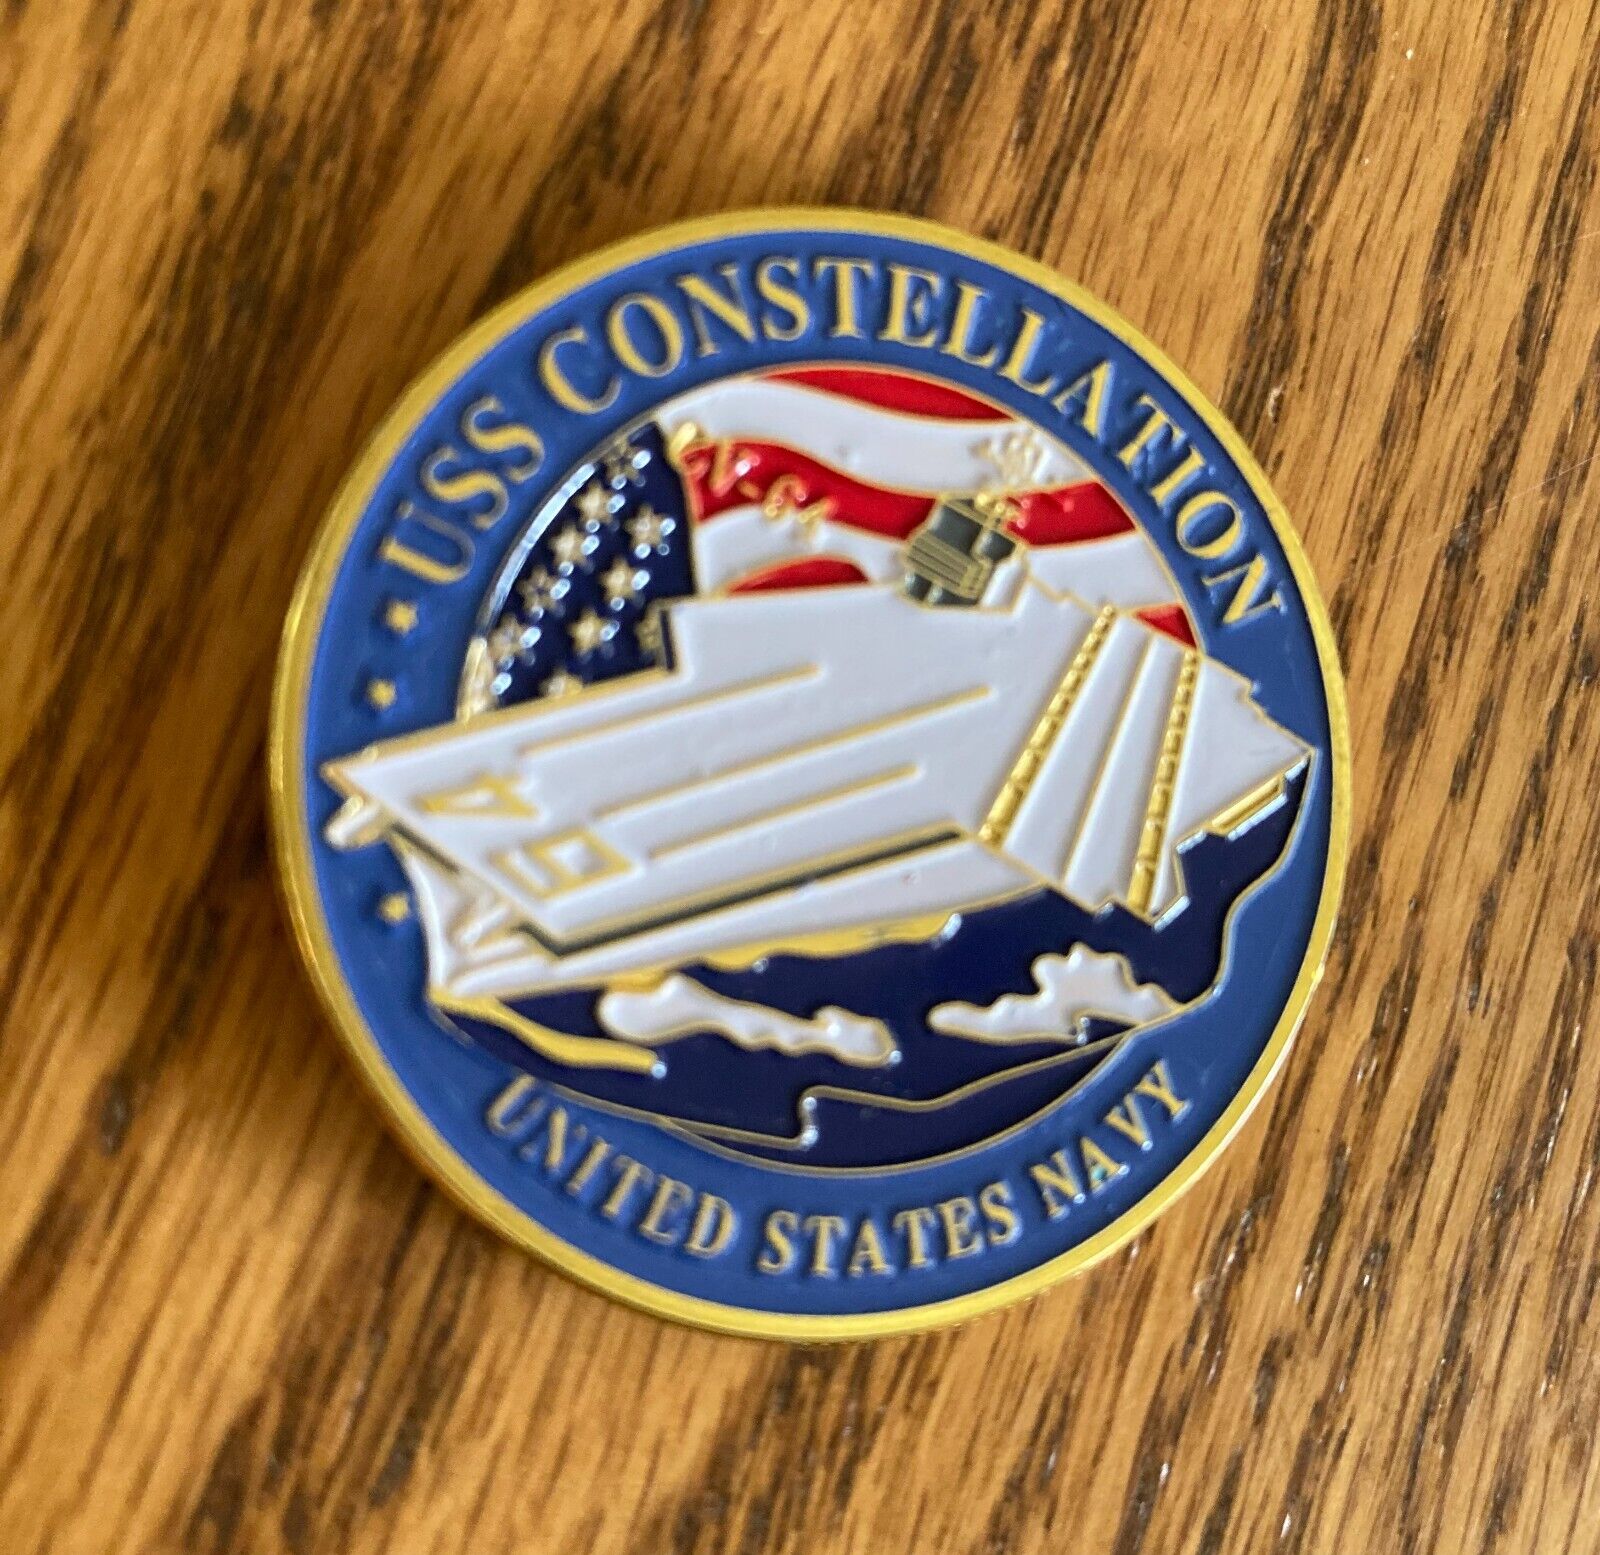 USS CONSTELLATION (CV-64) Challenge Coin